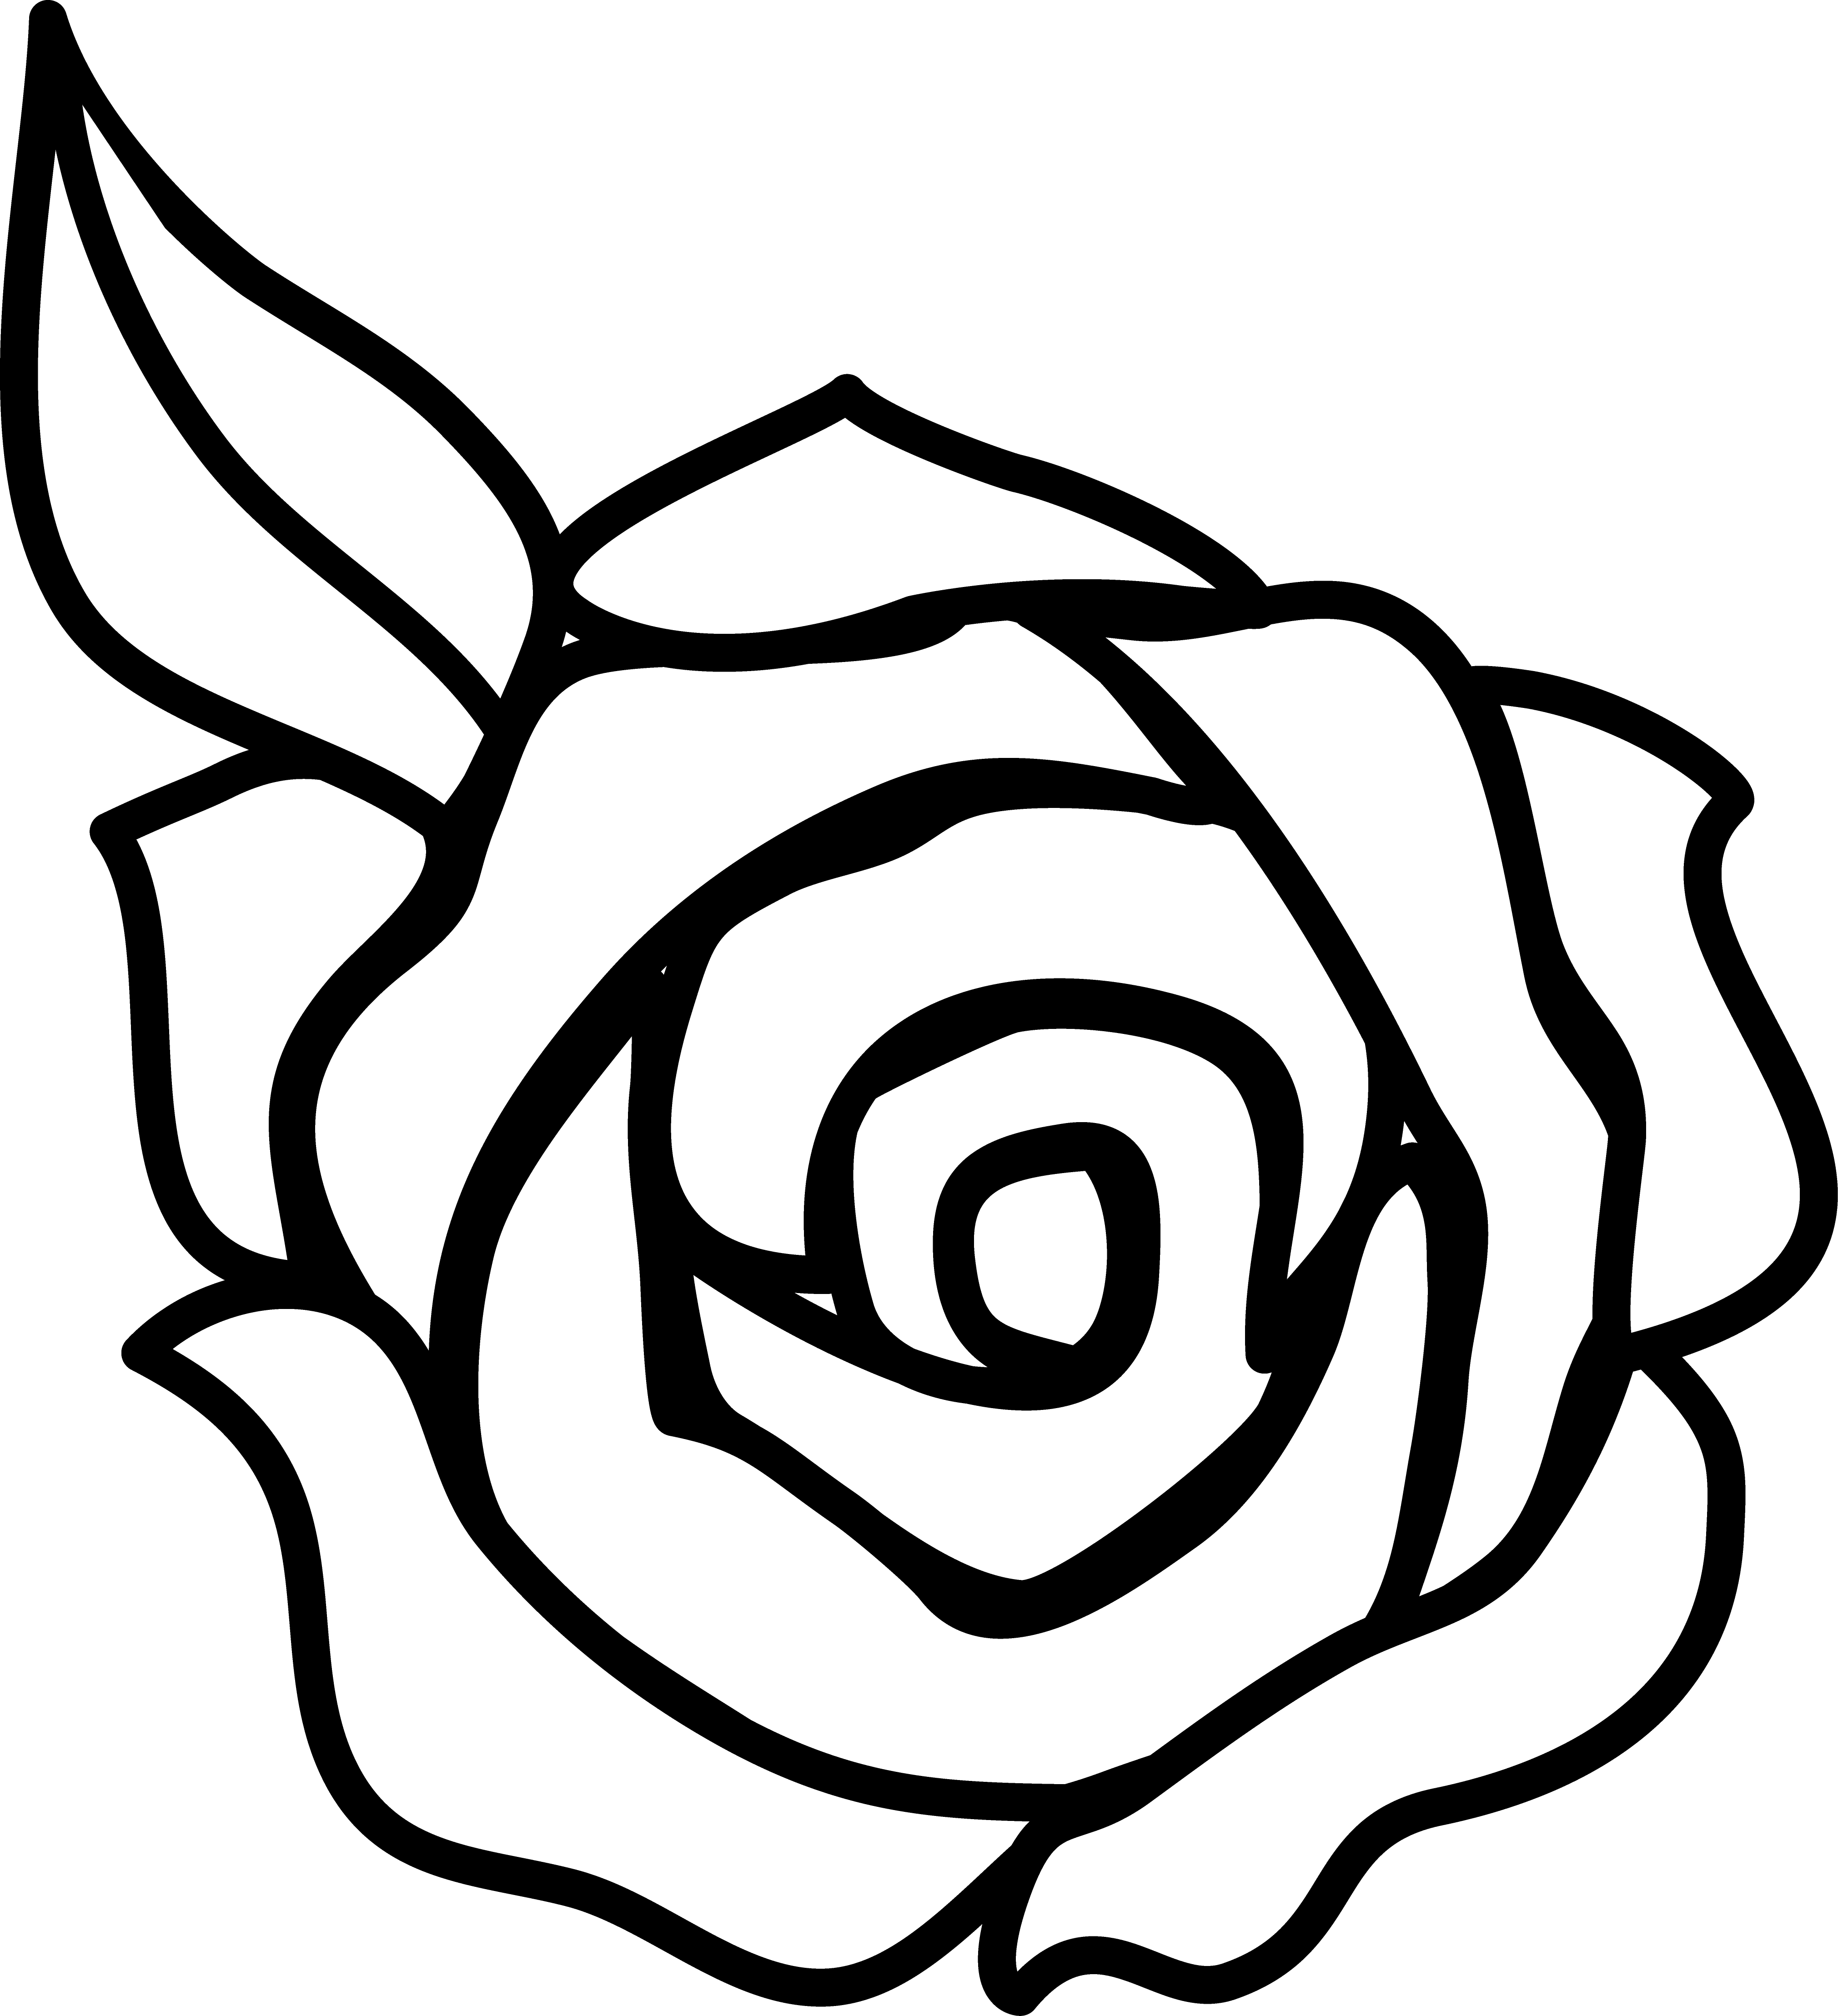 Black and white border. Clipart rose easy